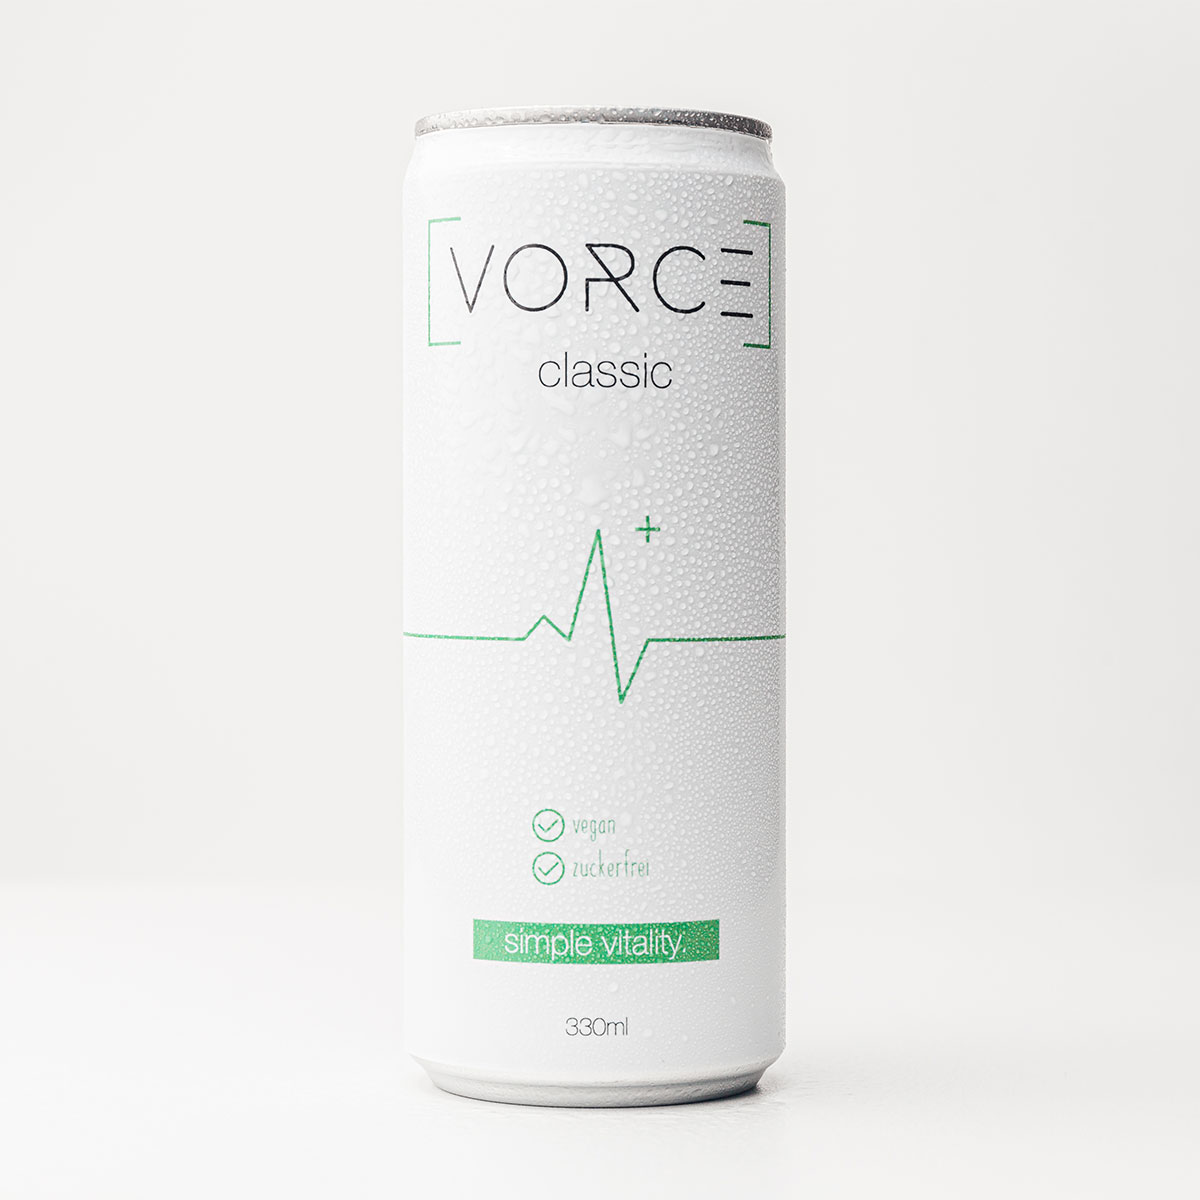 Veganer & Zuckerfreier Energy Drink - Vorce Classic 0,33l